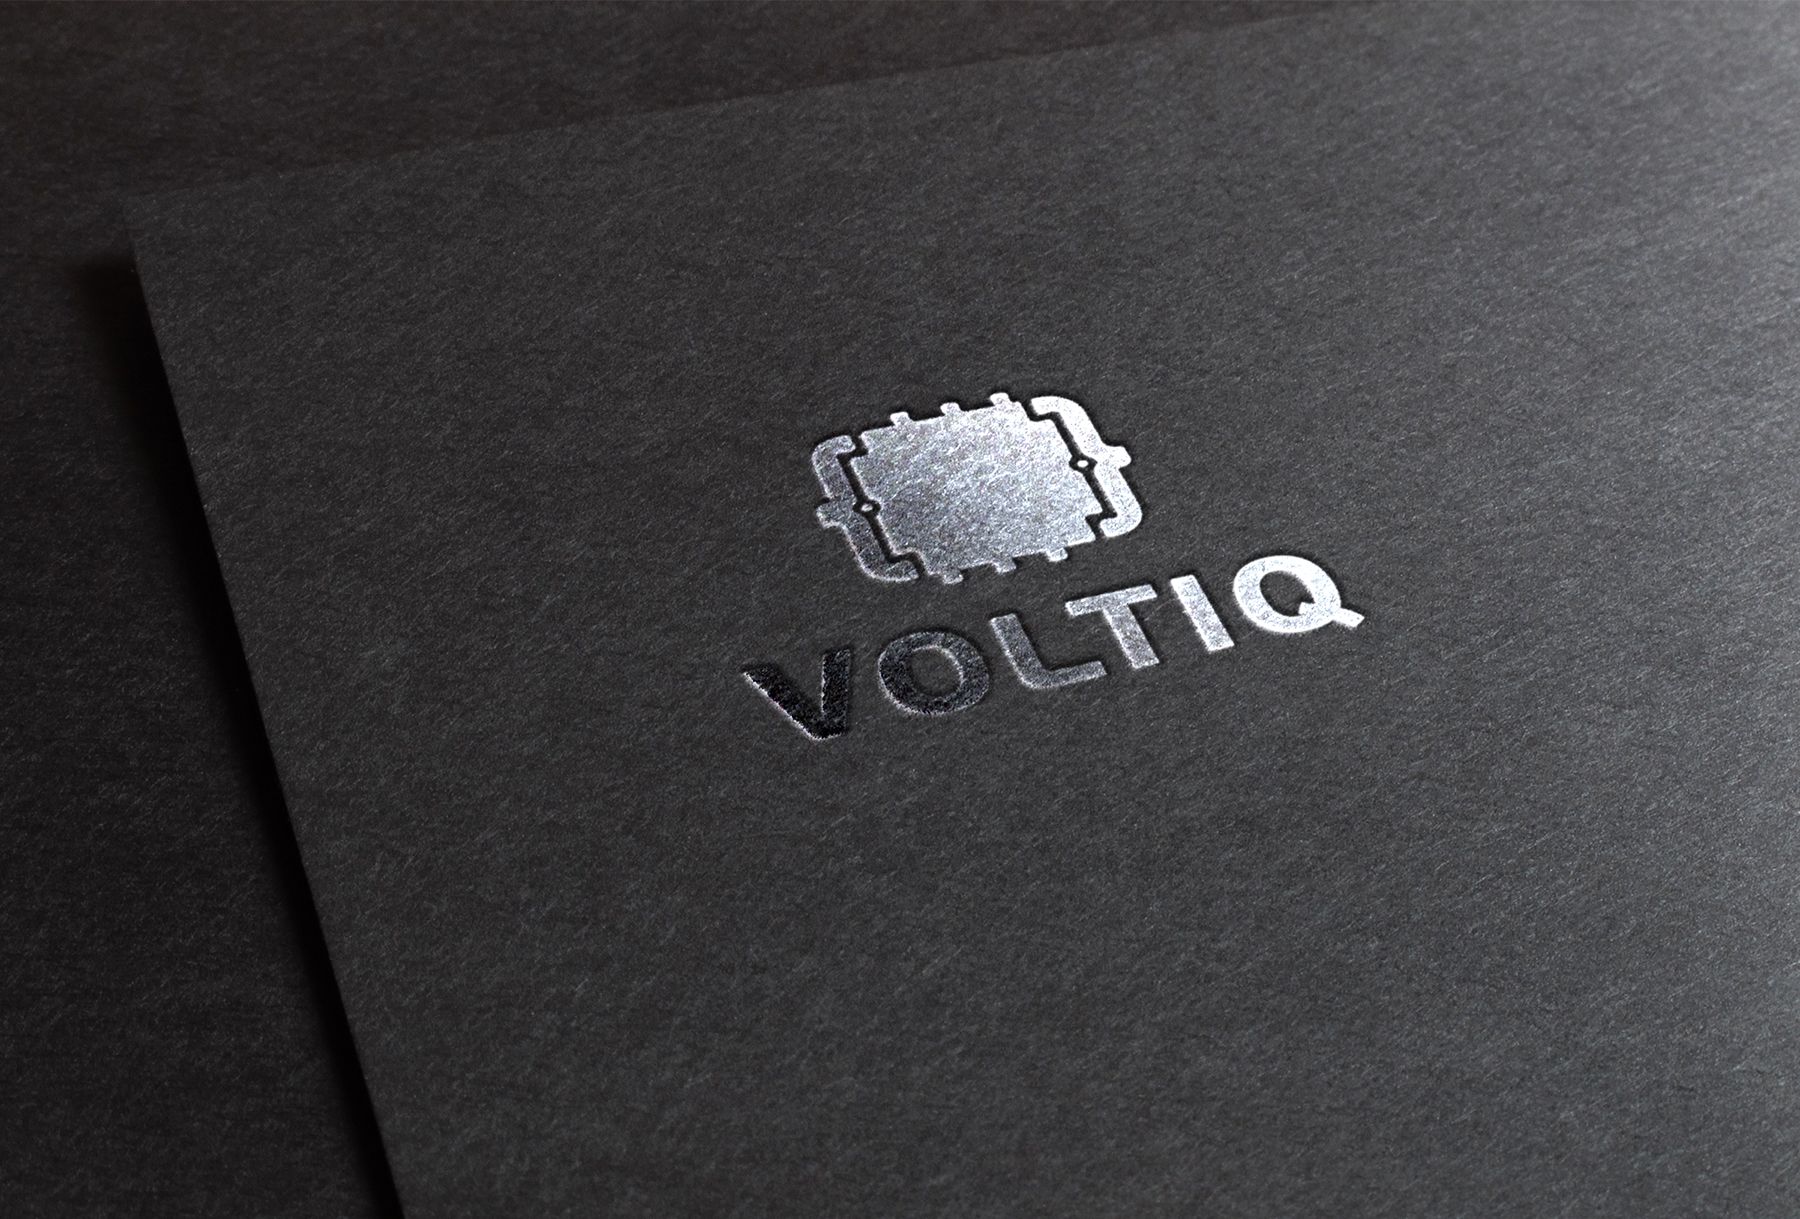 Логотип для Интернет-магазин Вольтик (VoltIQ.ru) - дизайнер Da4erry